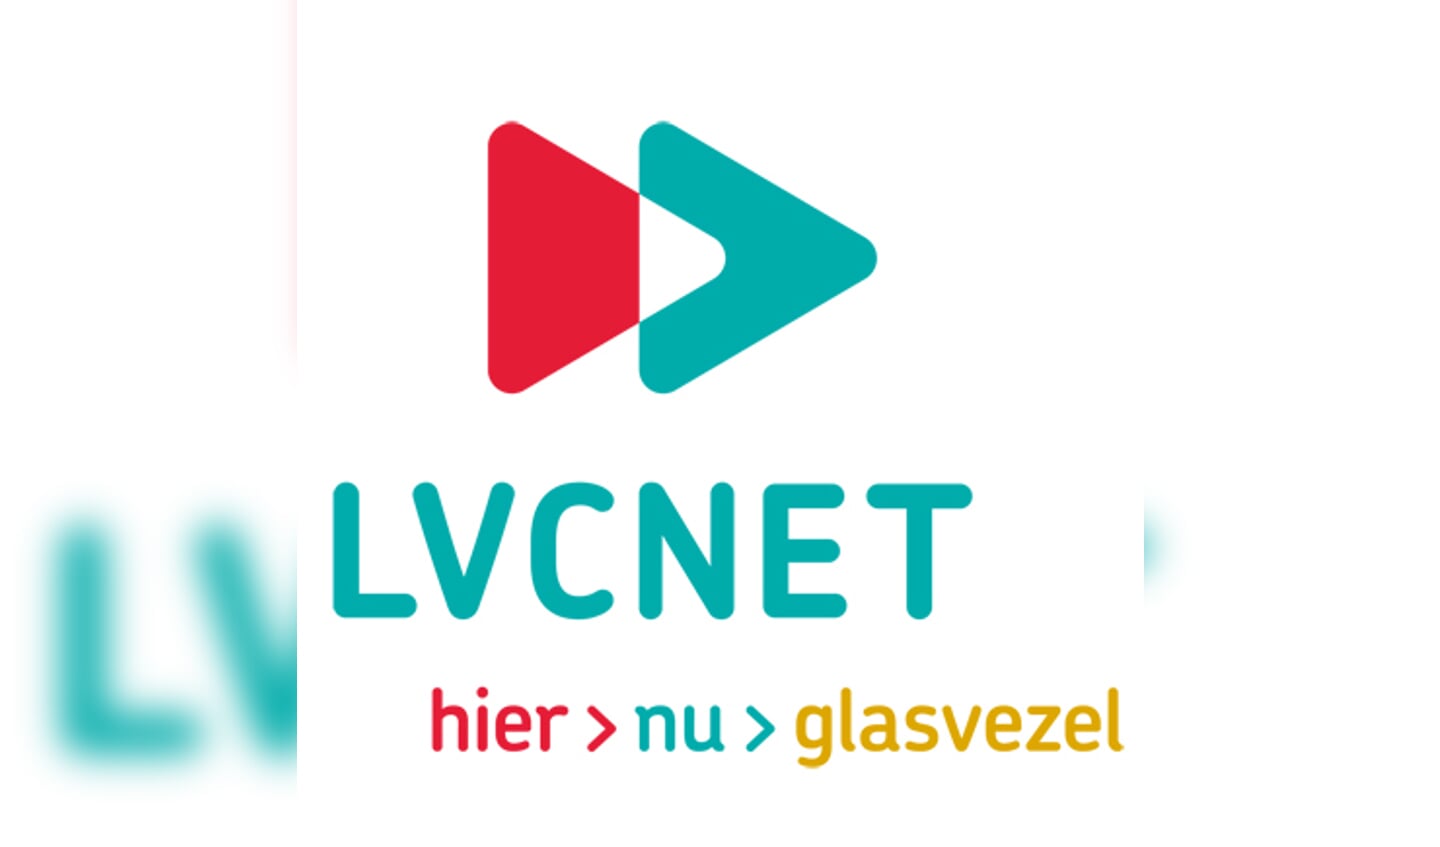 LVCNET steunt verenigingen middels een clubkasactie.